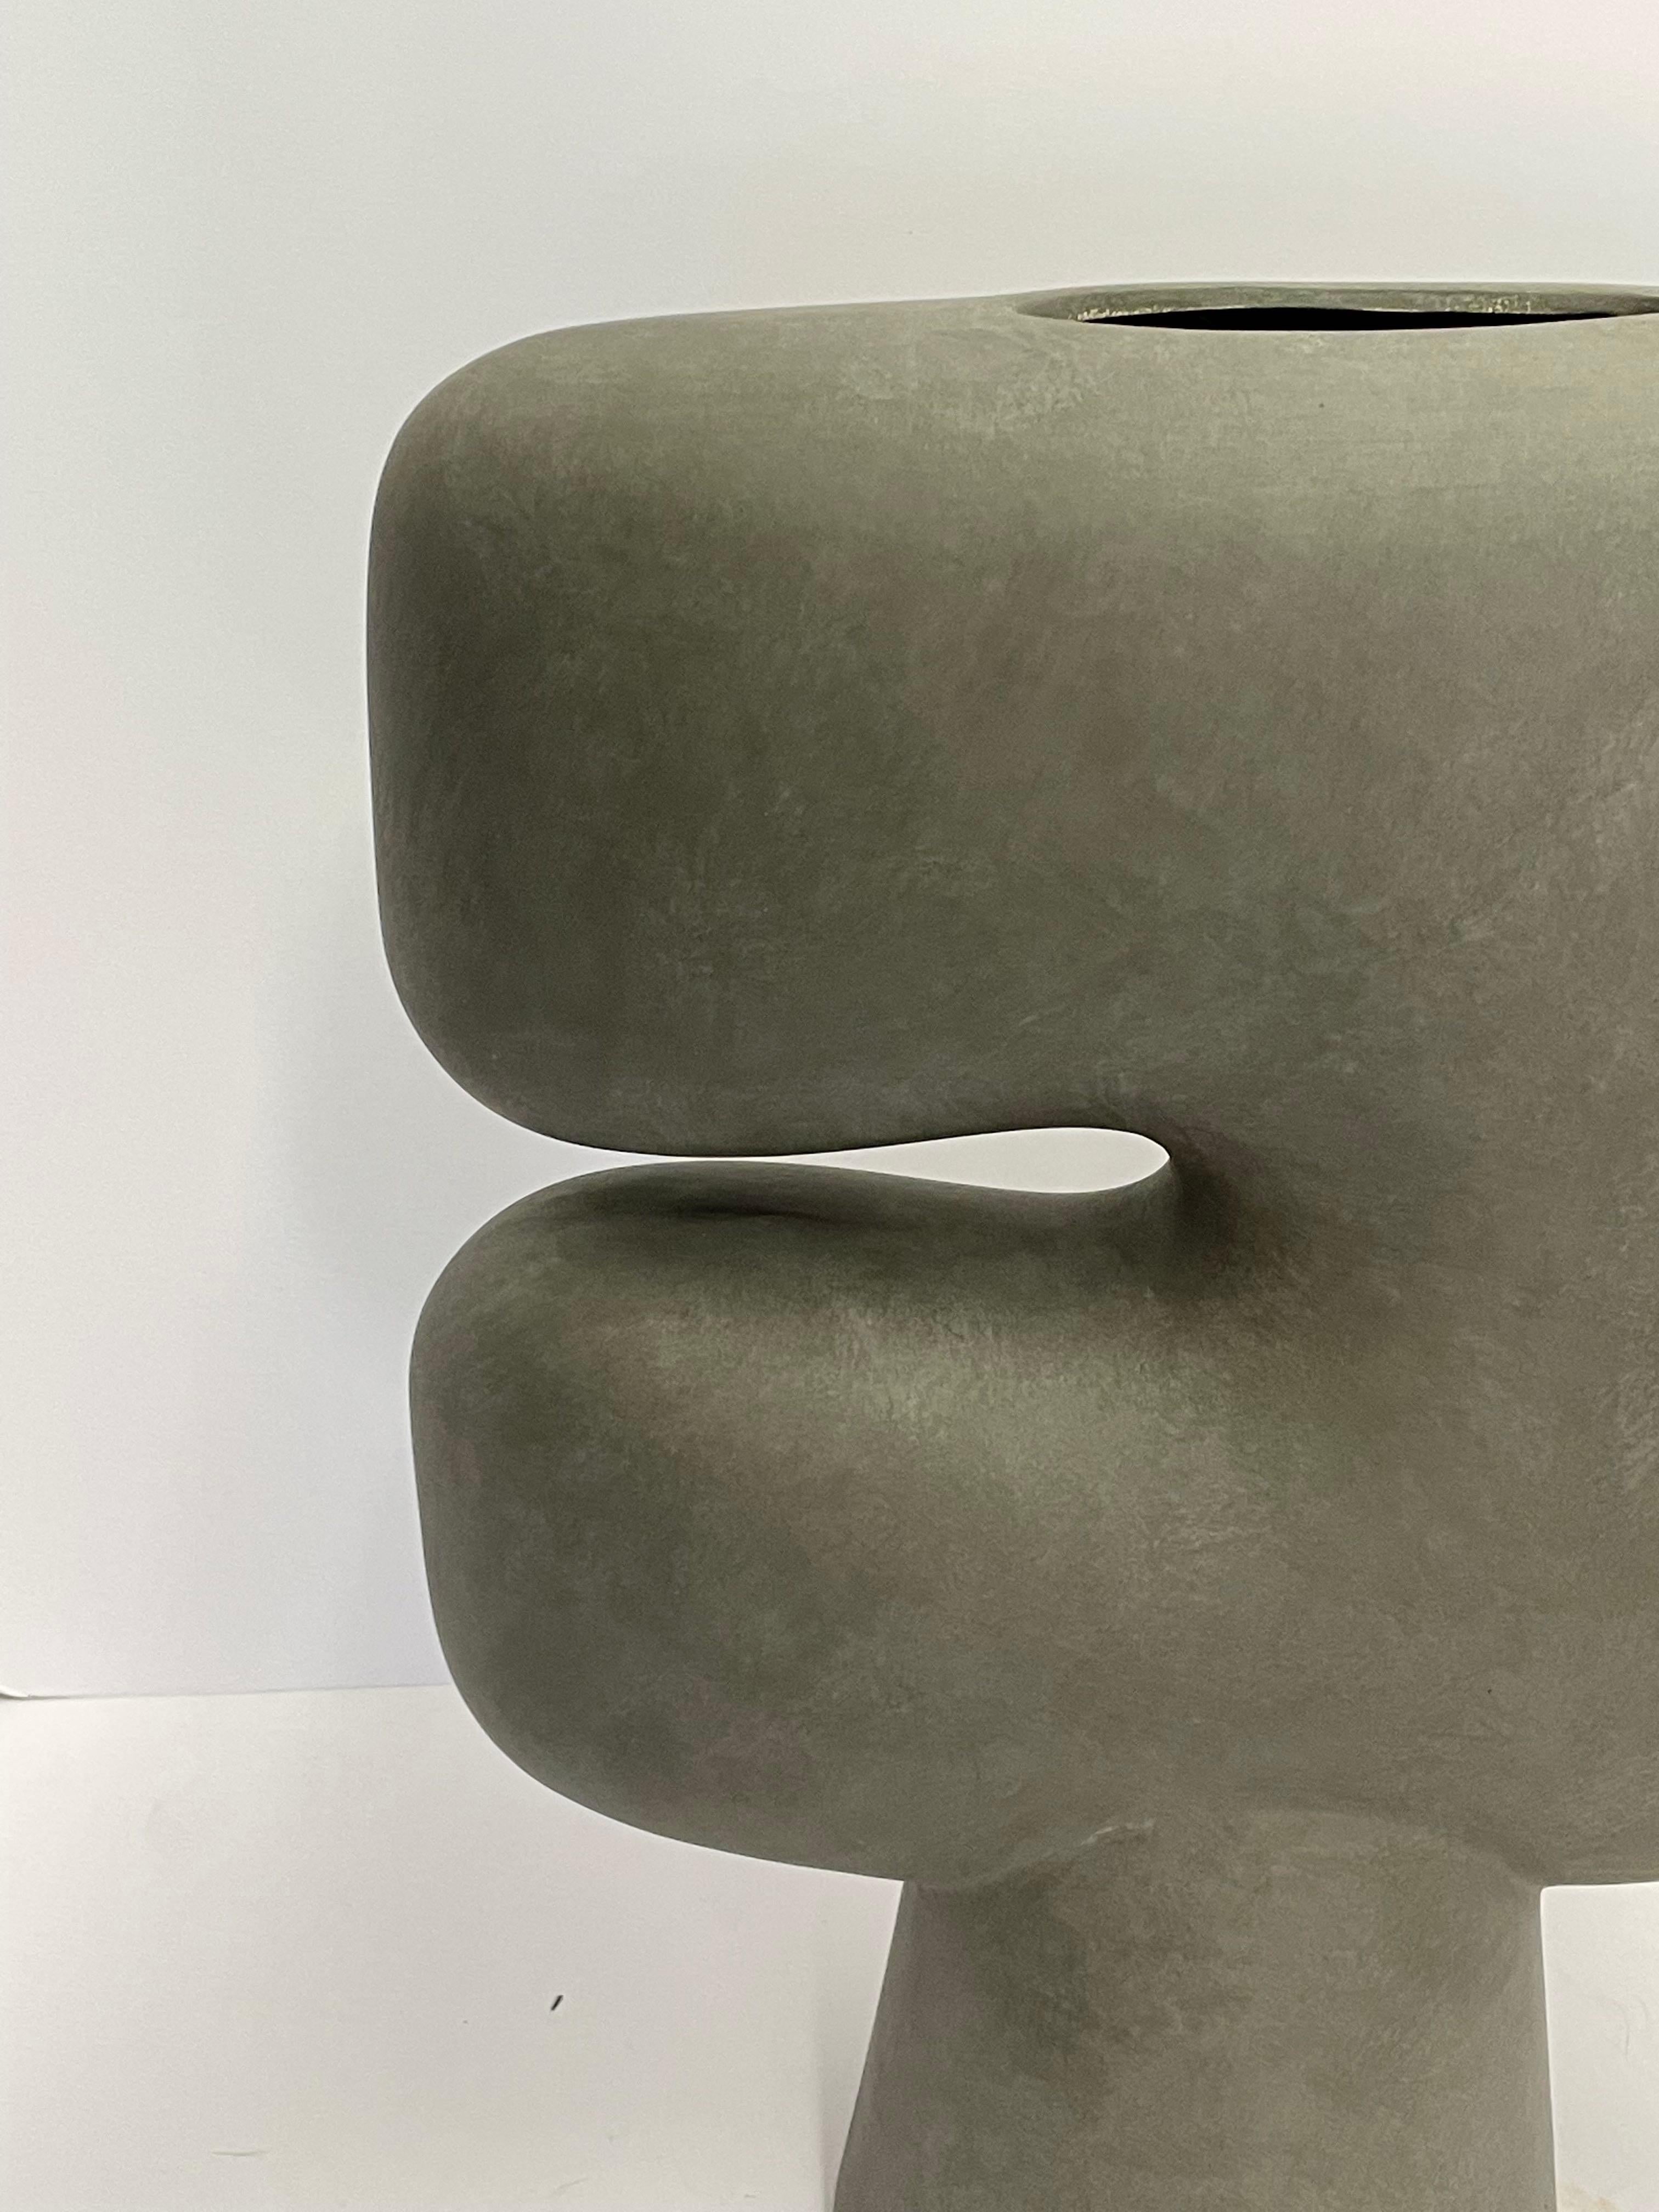 Contemporary Danish designed large C shape dark grey matte finish vase.
Tubular shaped base and spout.
